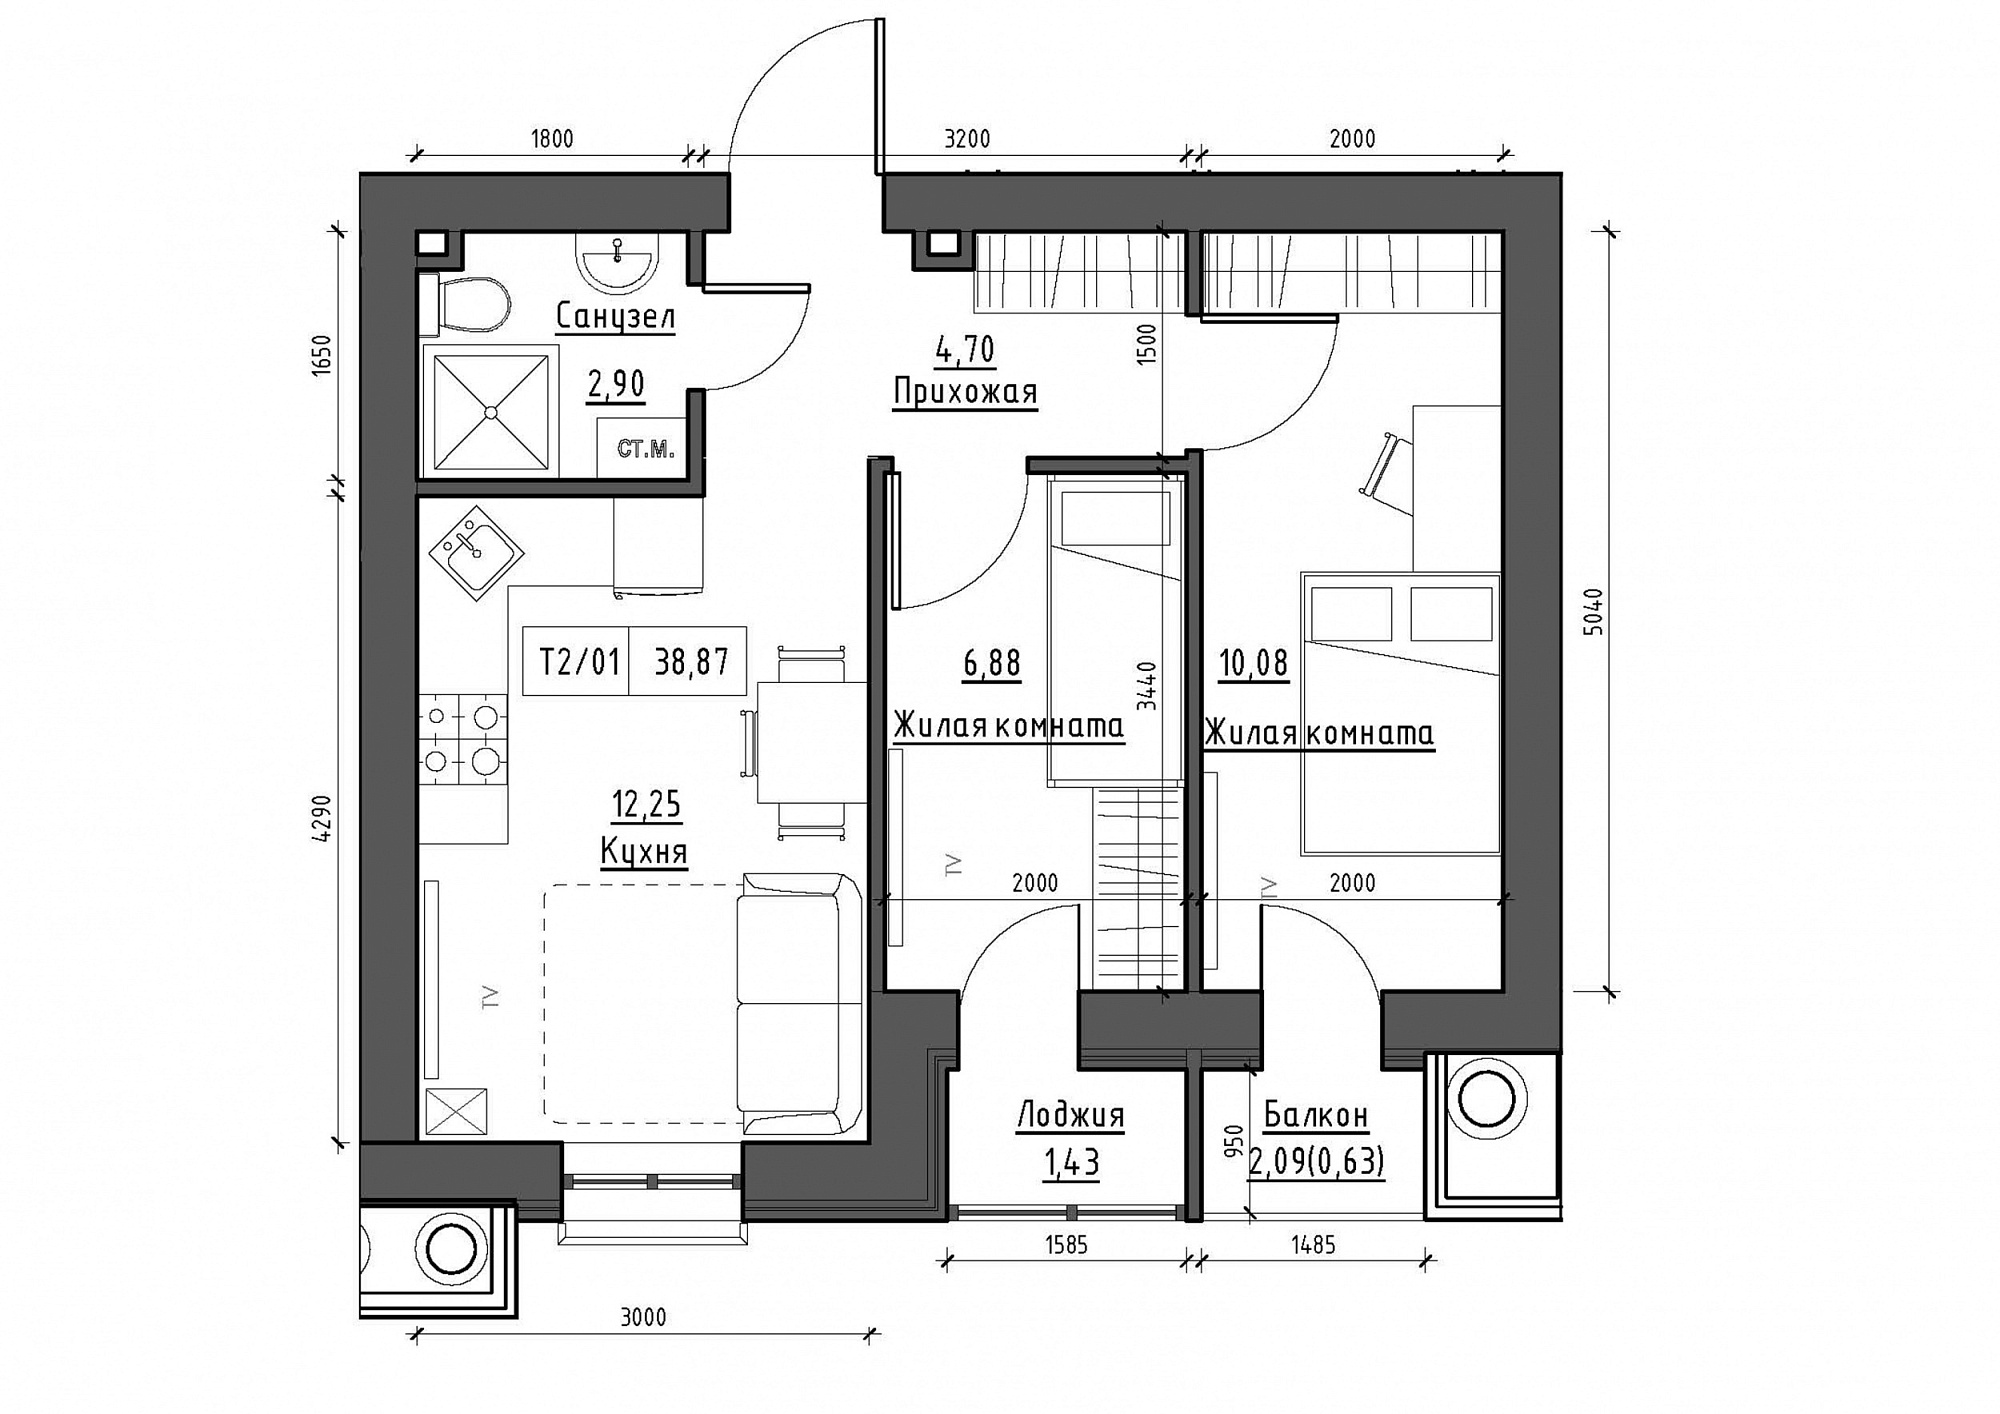 Планування 2-к квартира площею 38.87м2, KS-012-02/0005.